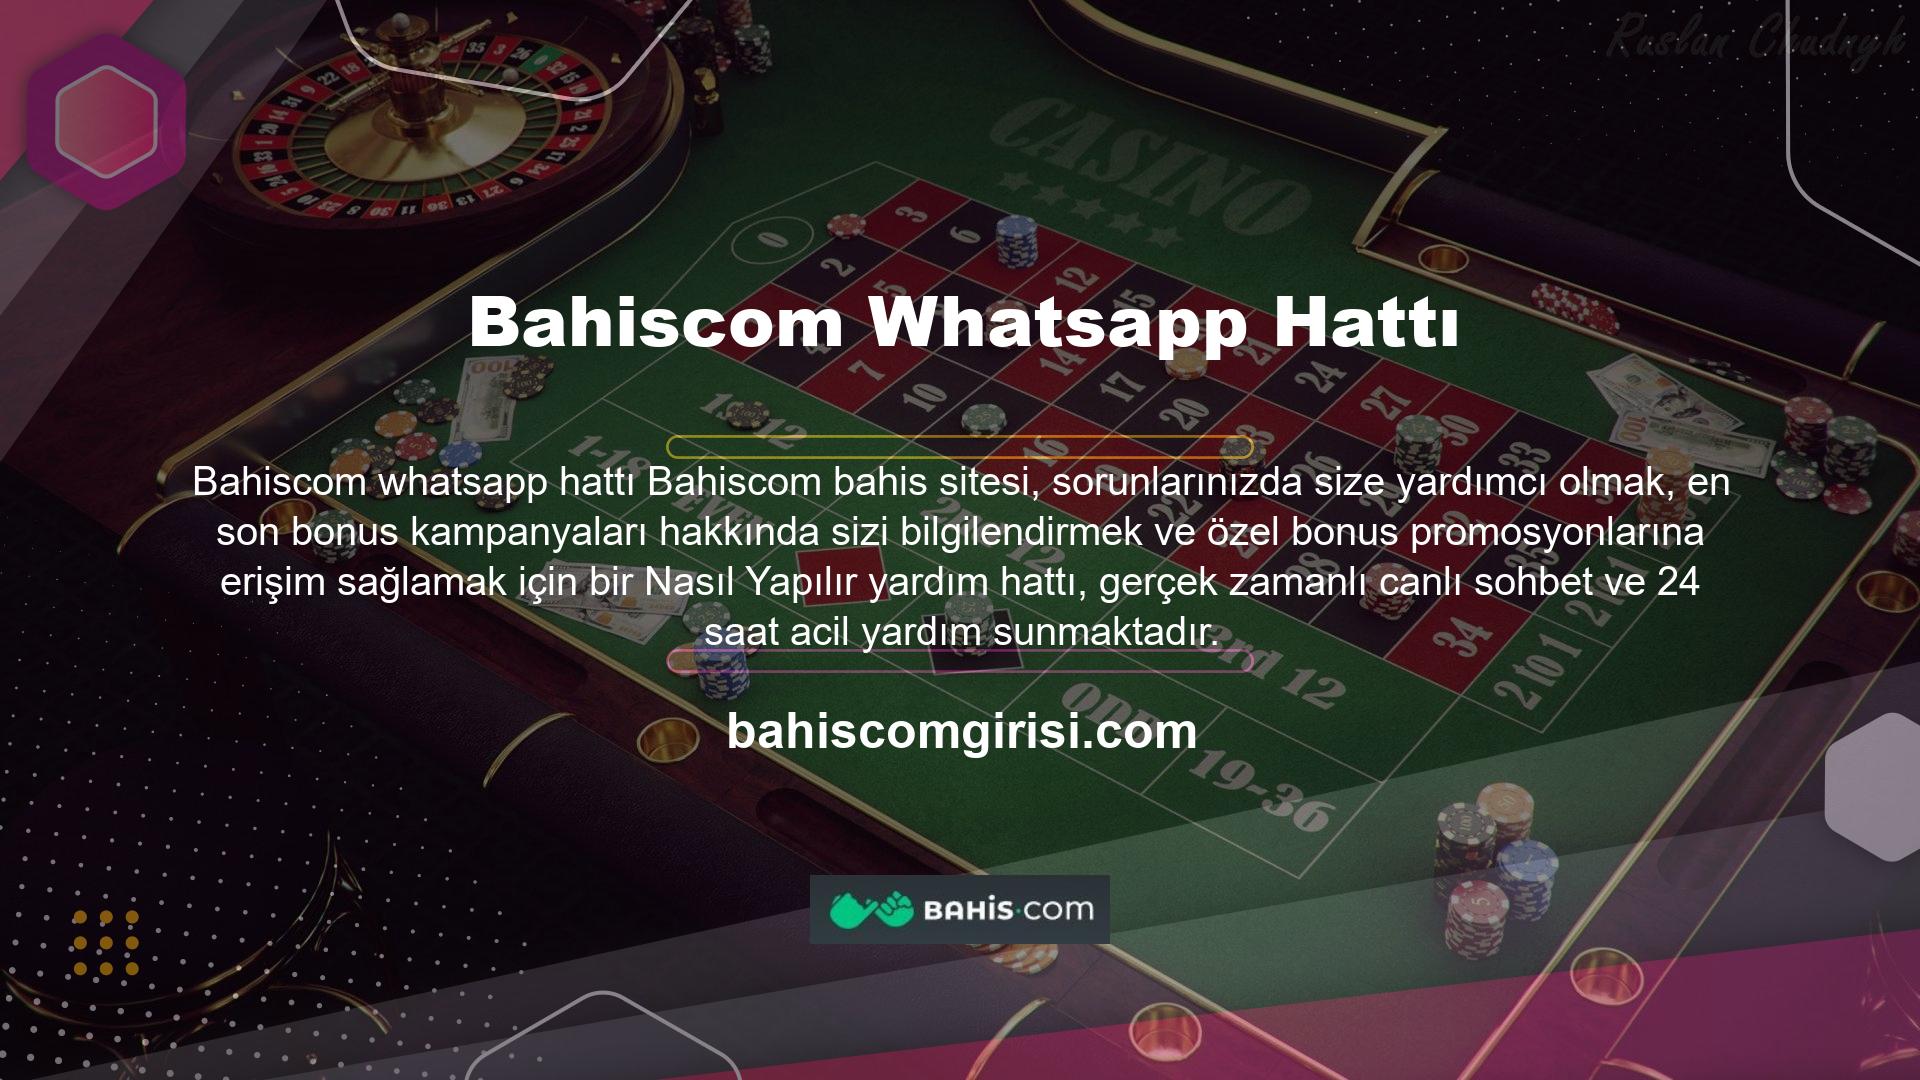 Bahiscom Whatsapp serisine başlamak bonus kampanyalarıyla birlikte gelir